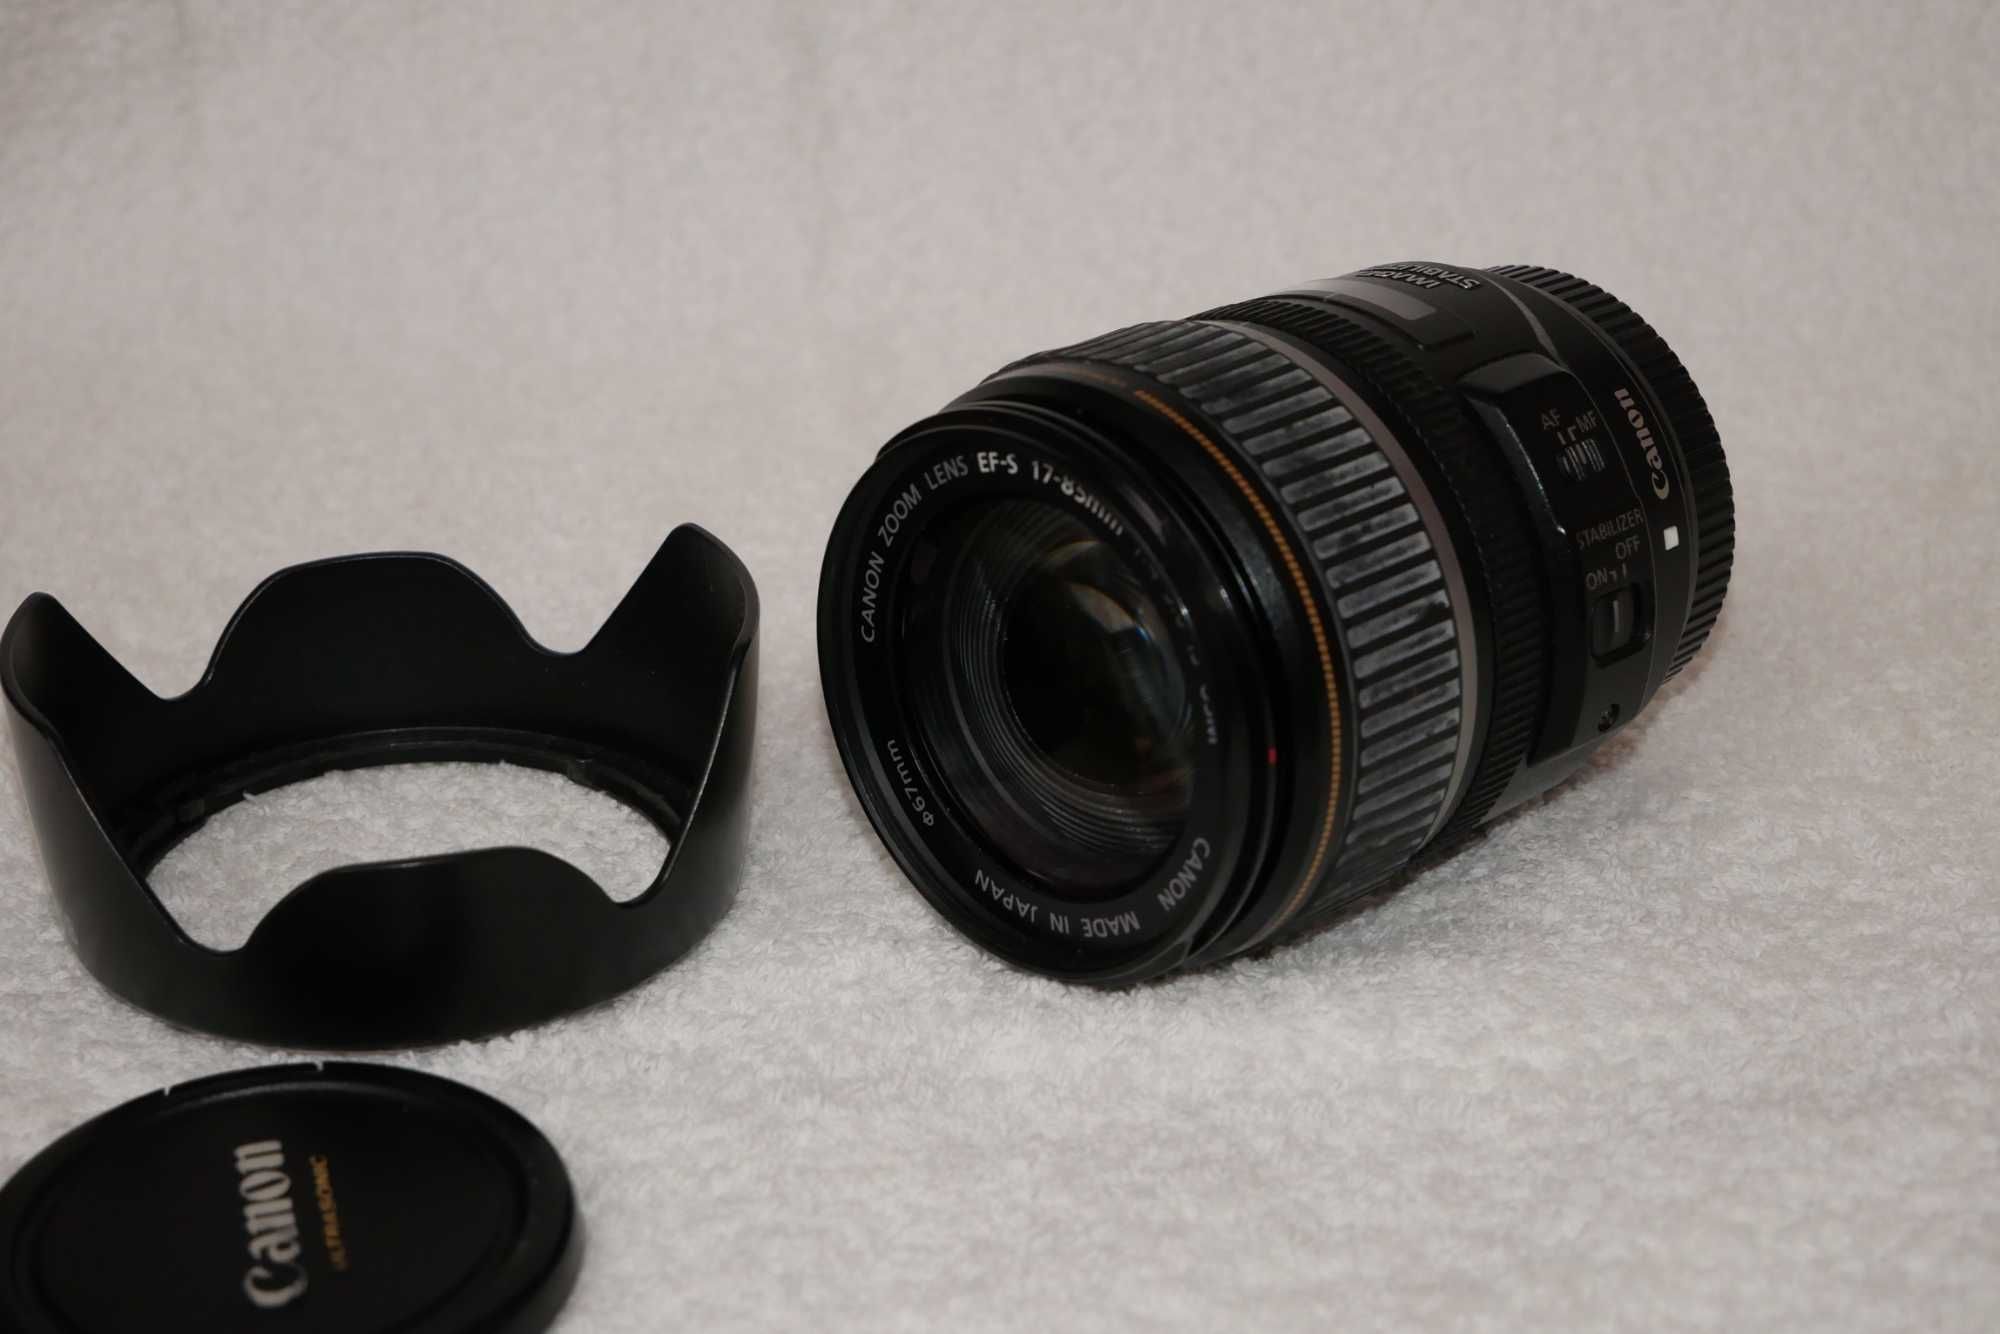 Canon 40D cu accesorii